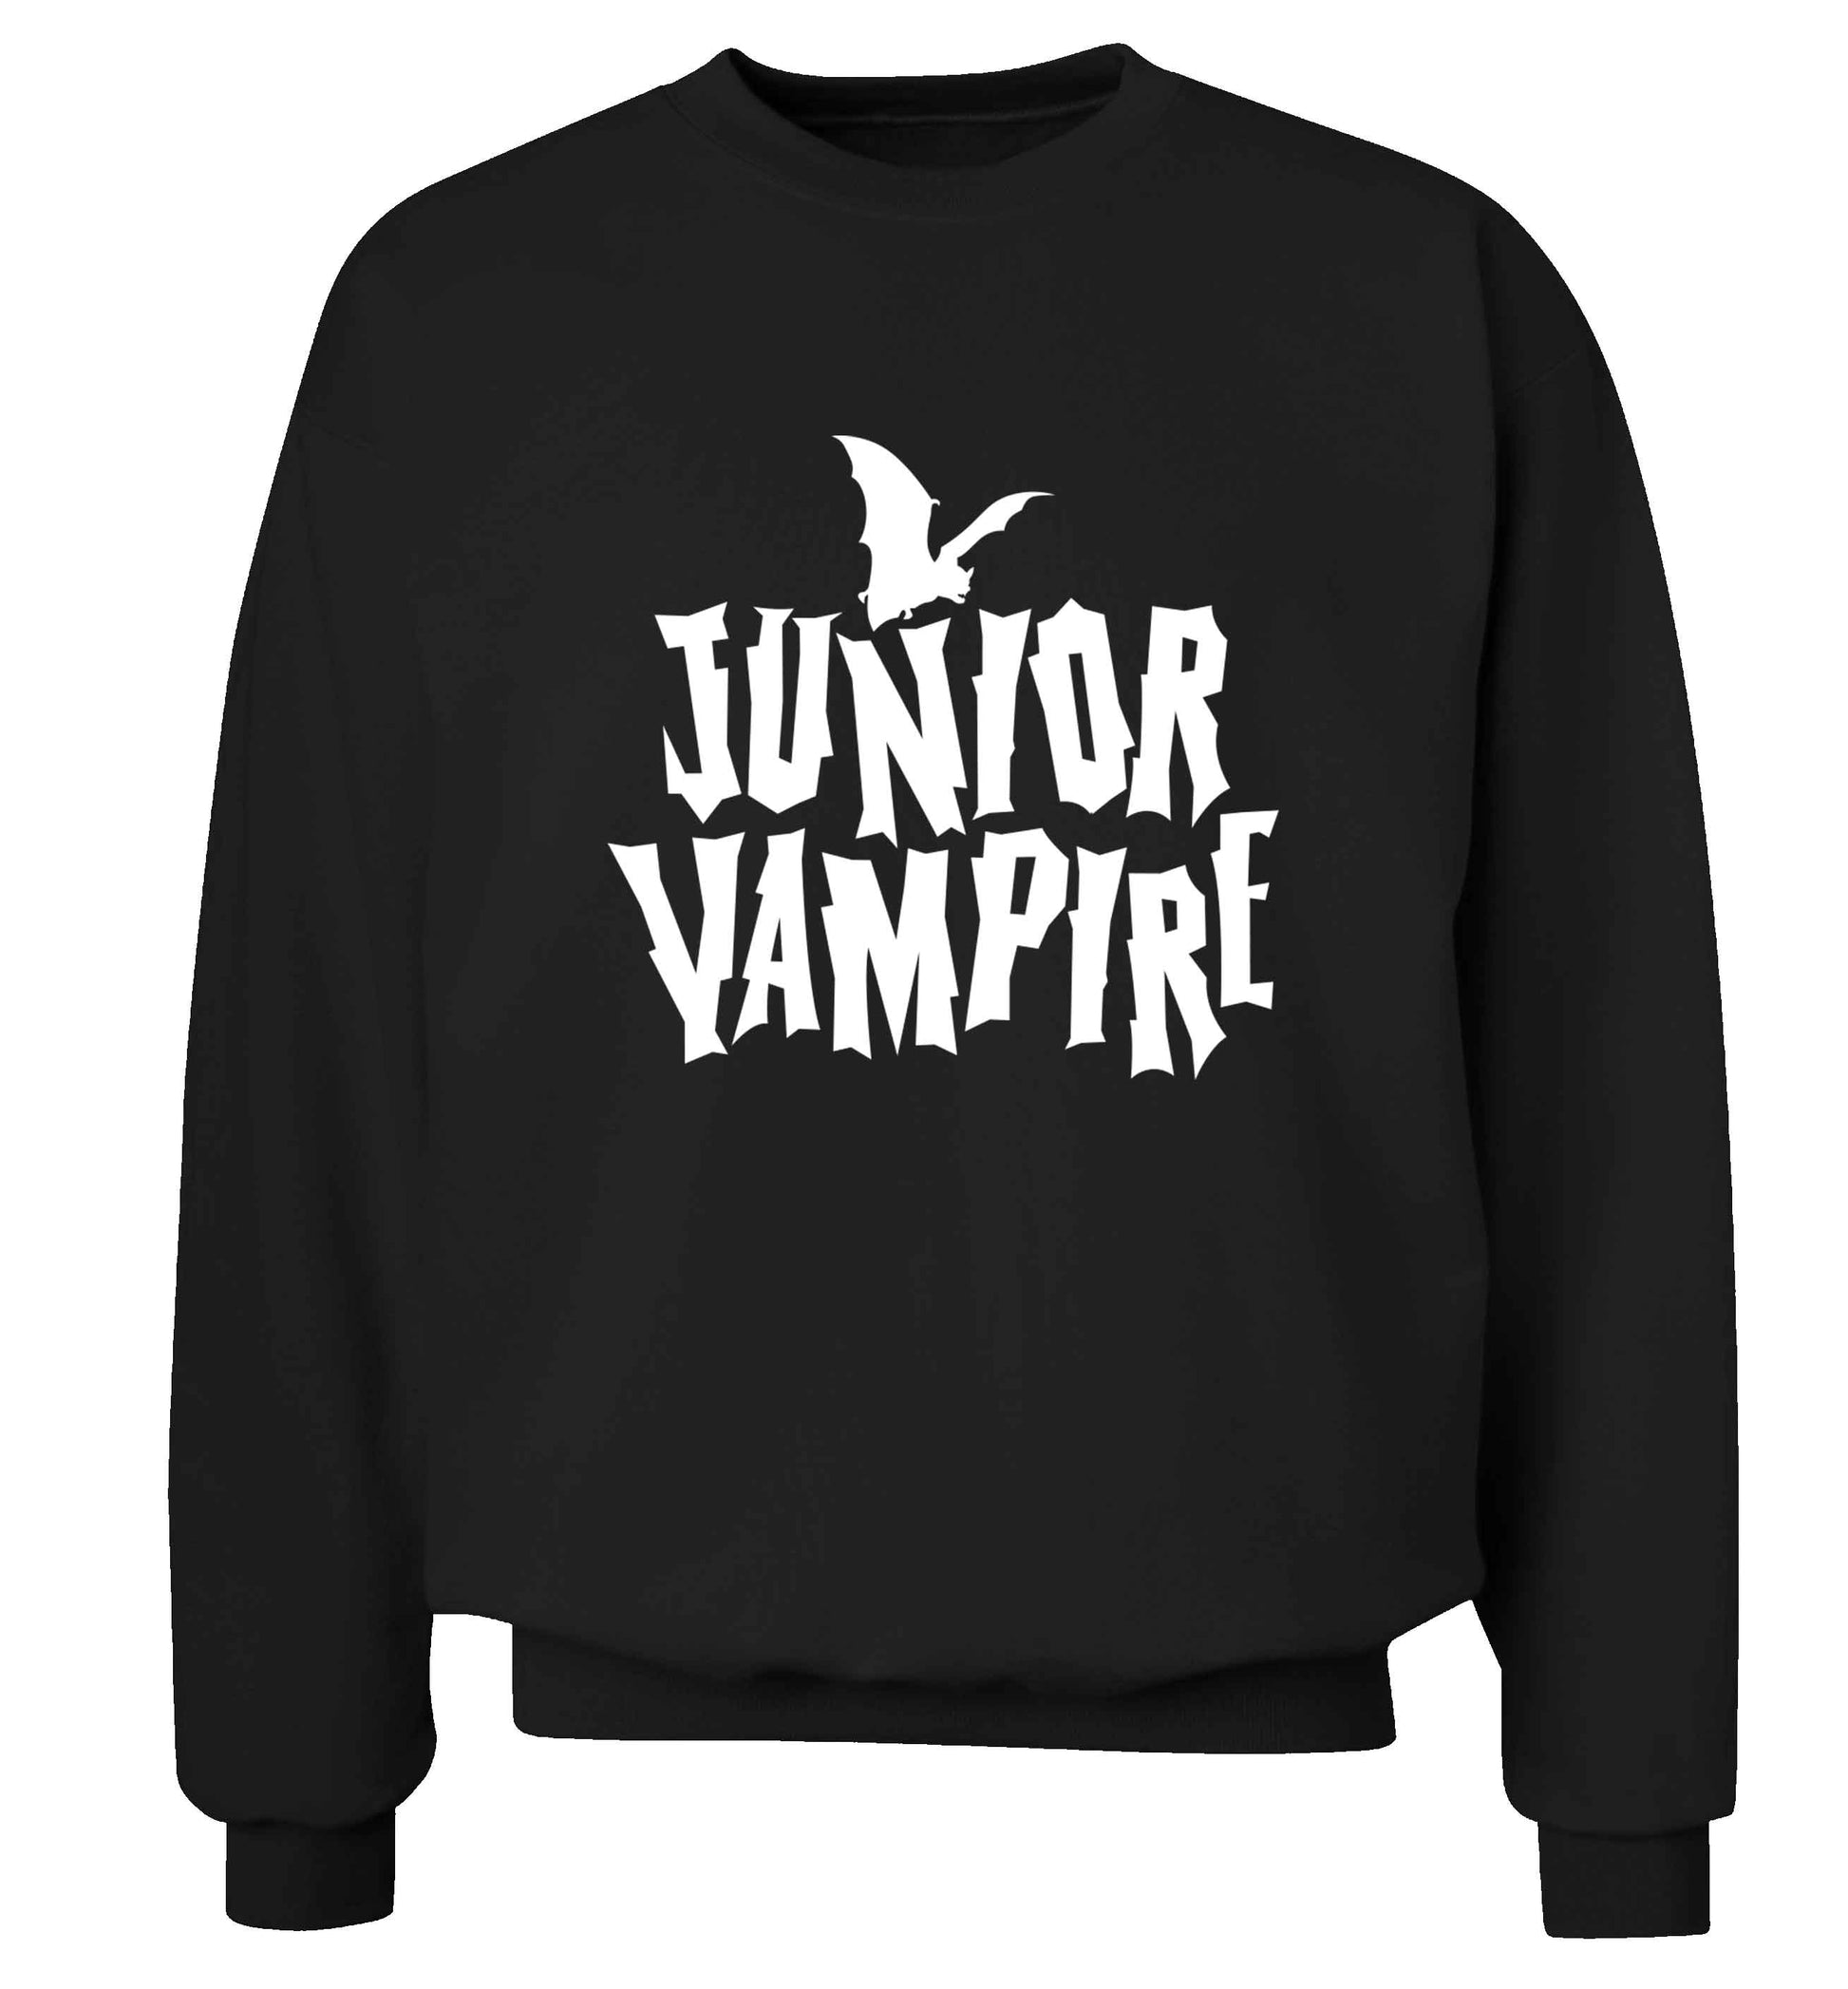 Junior vampire adult's unisex black sweater 2XL